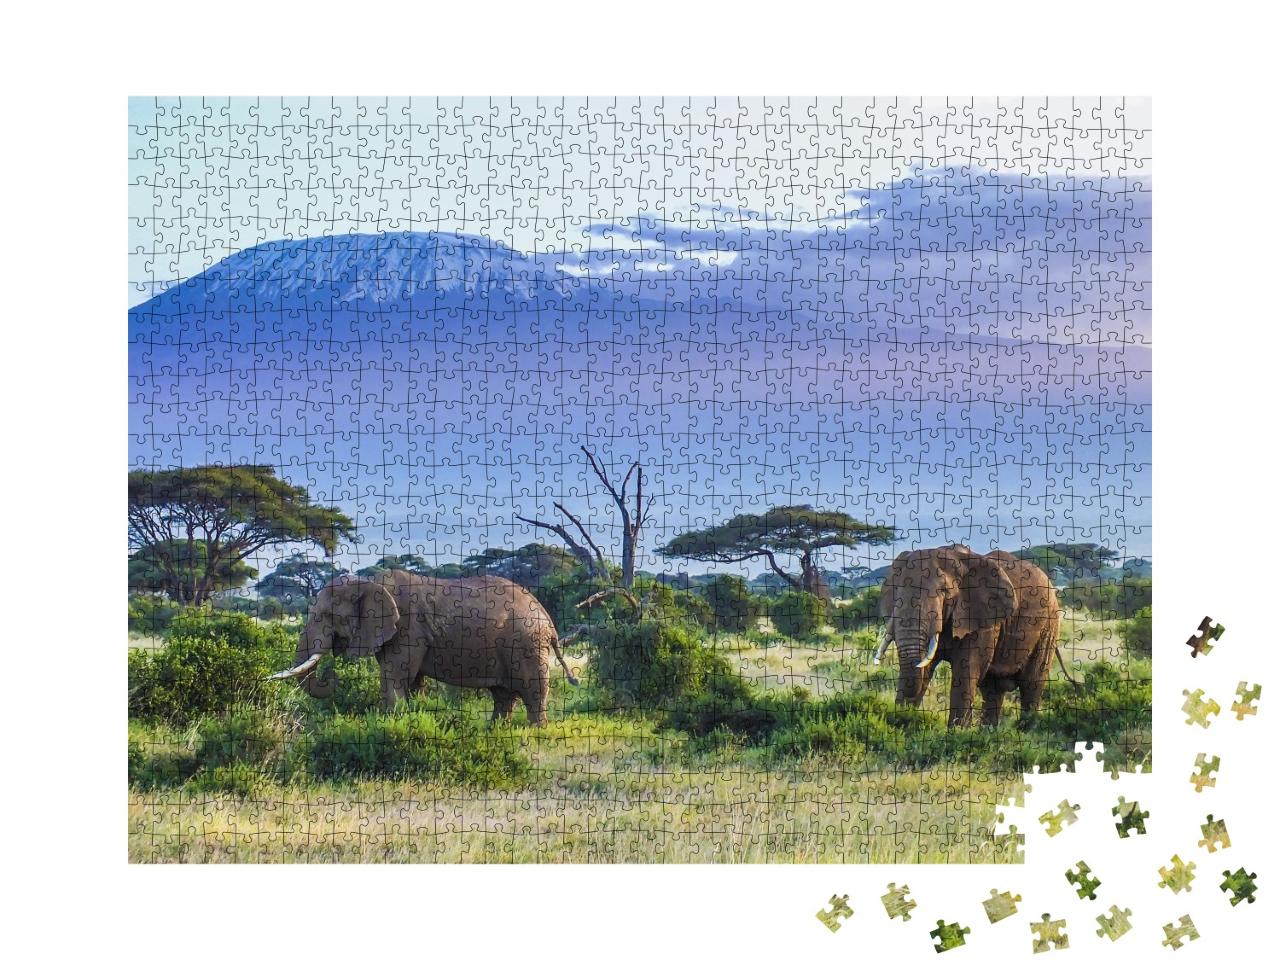 Puzzle de 1000 pièces « Les éléphants du Kilimandjaro »